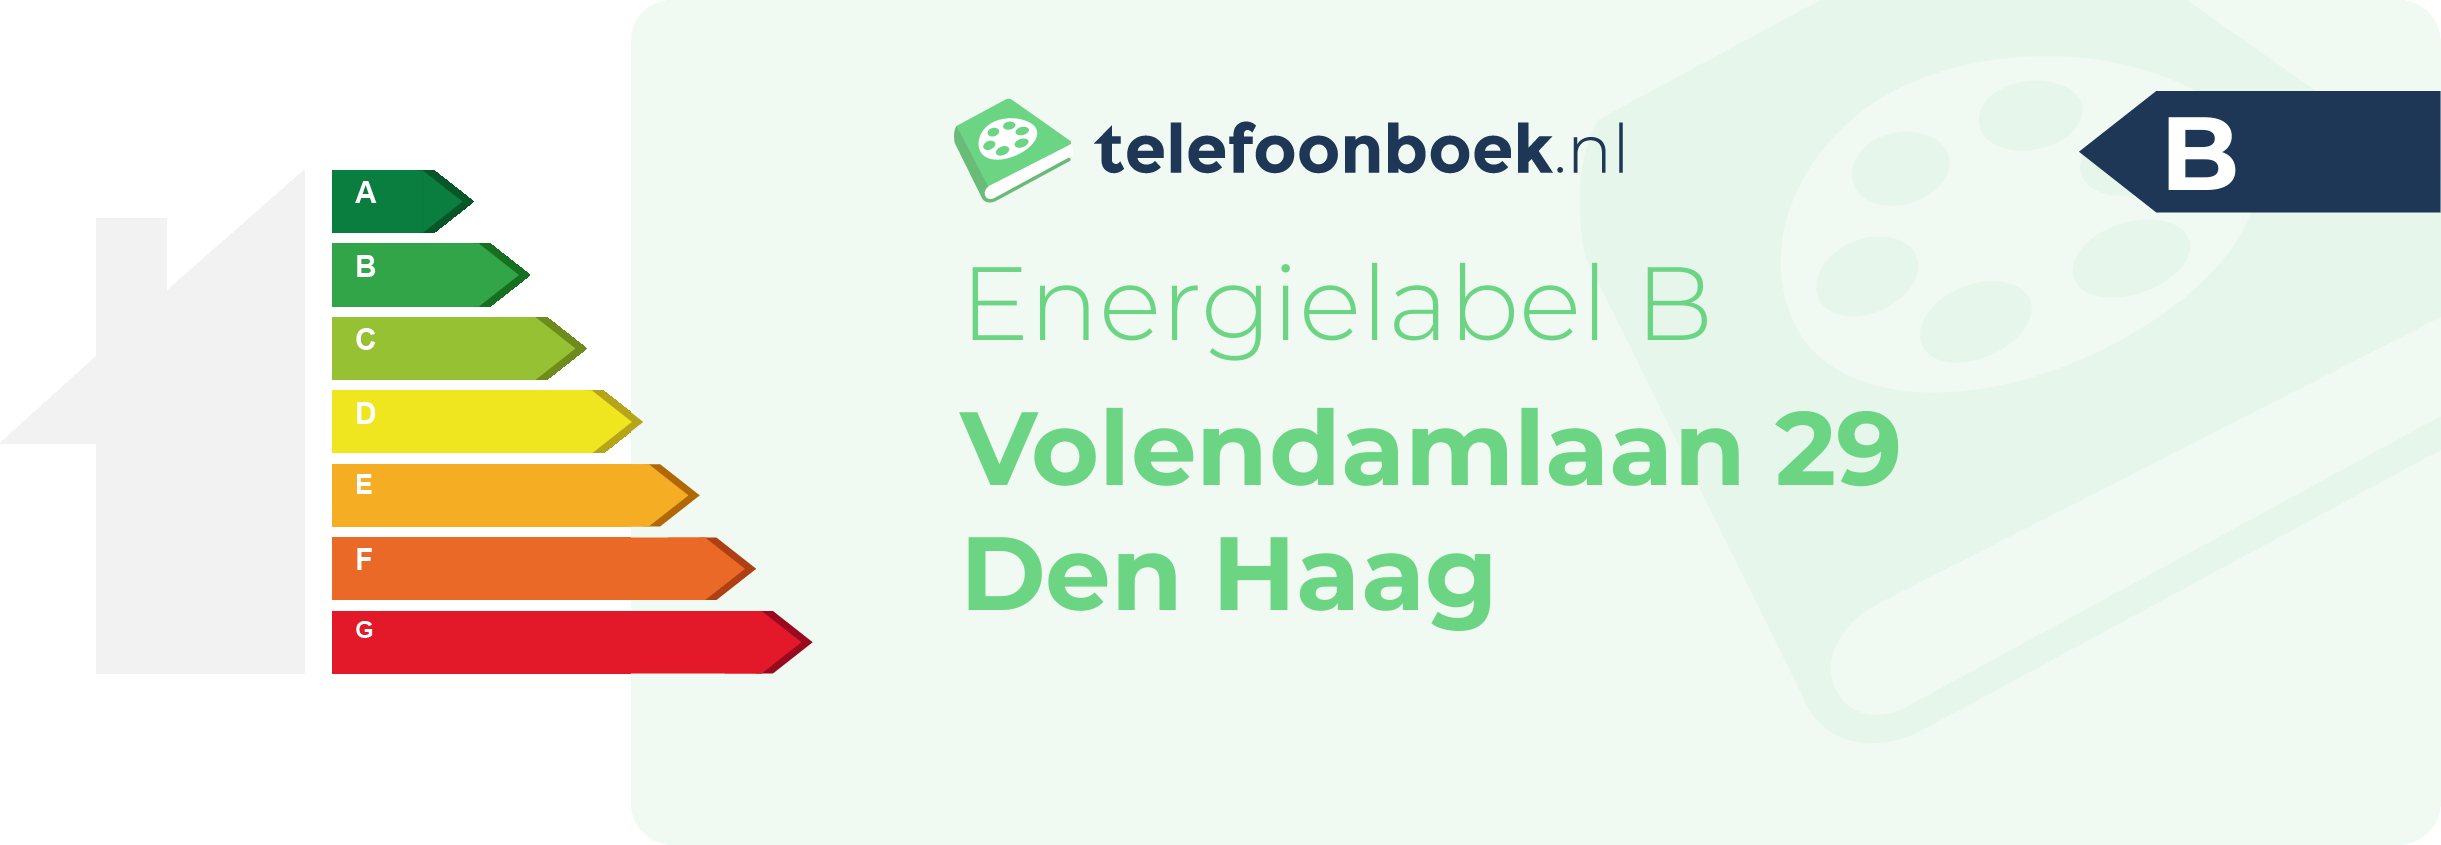 Energielabel Volendamlaan 29 Den Haag